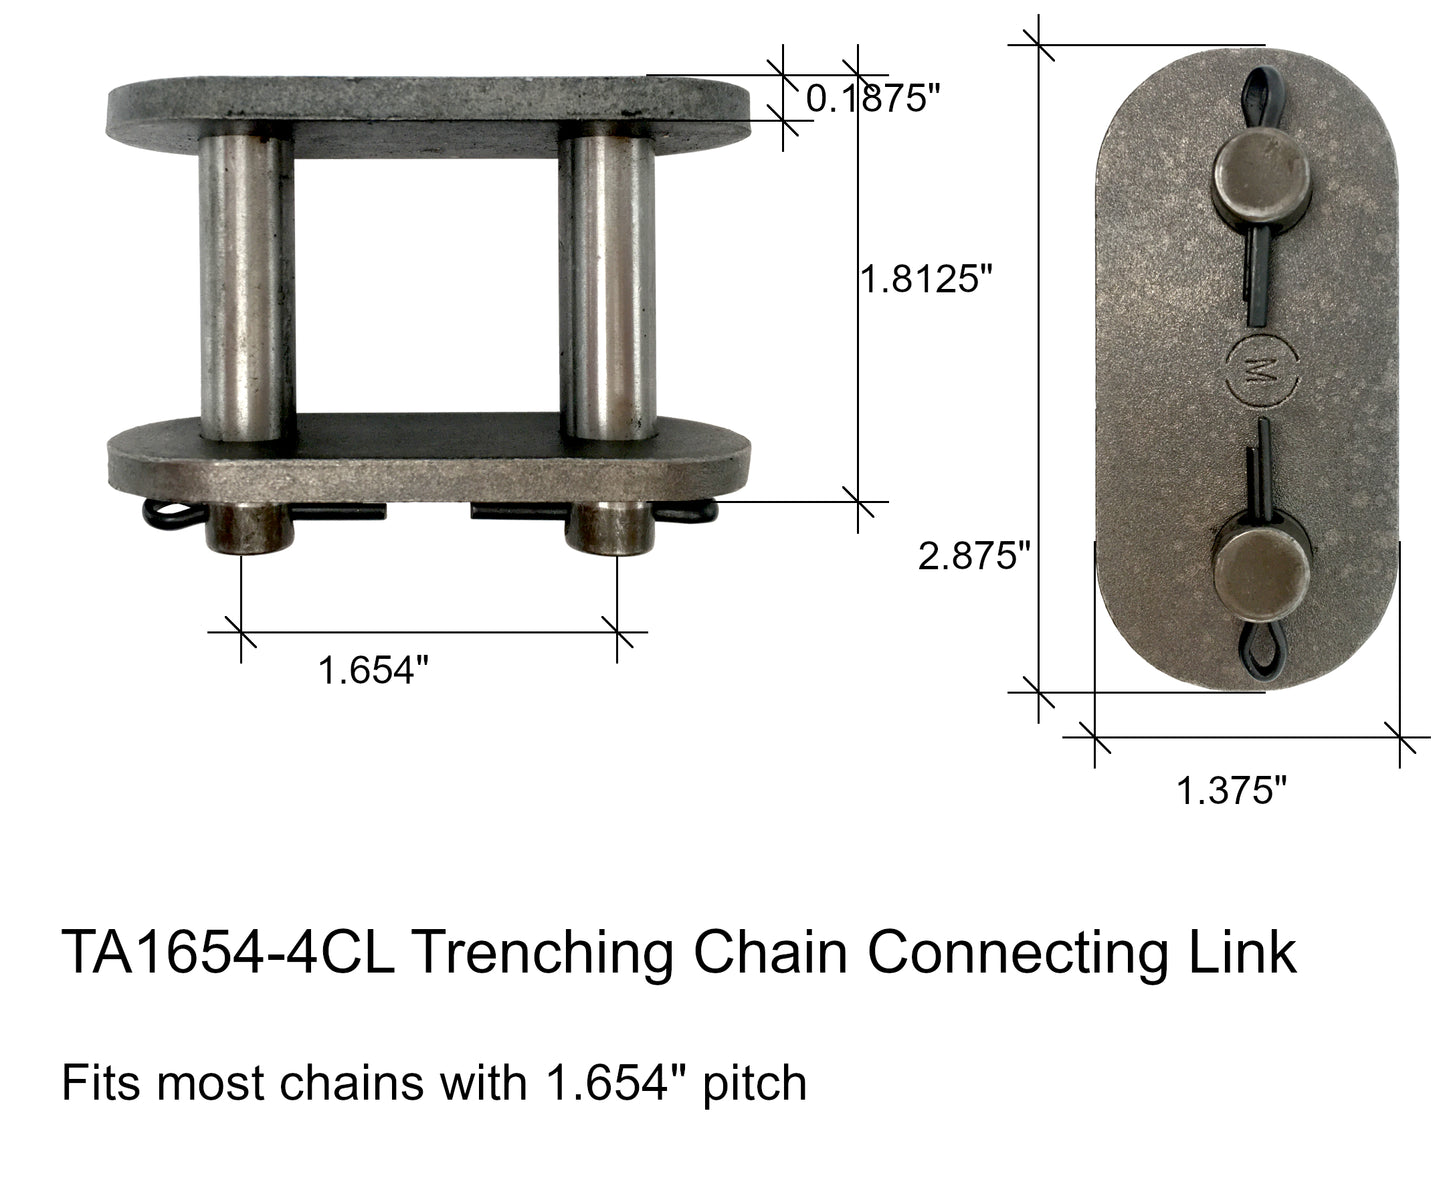 Maillon de connexion de chaîne de tranchée, s'adapte à la plupart des pas de 1,654" - TA1654-4CL, 165CL